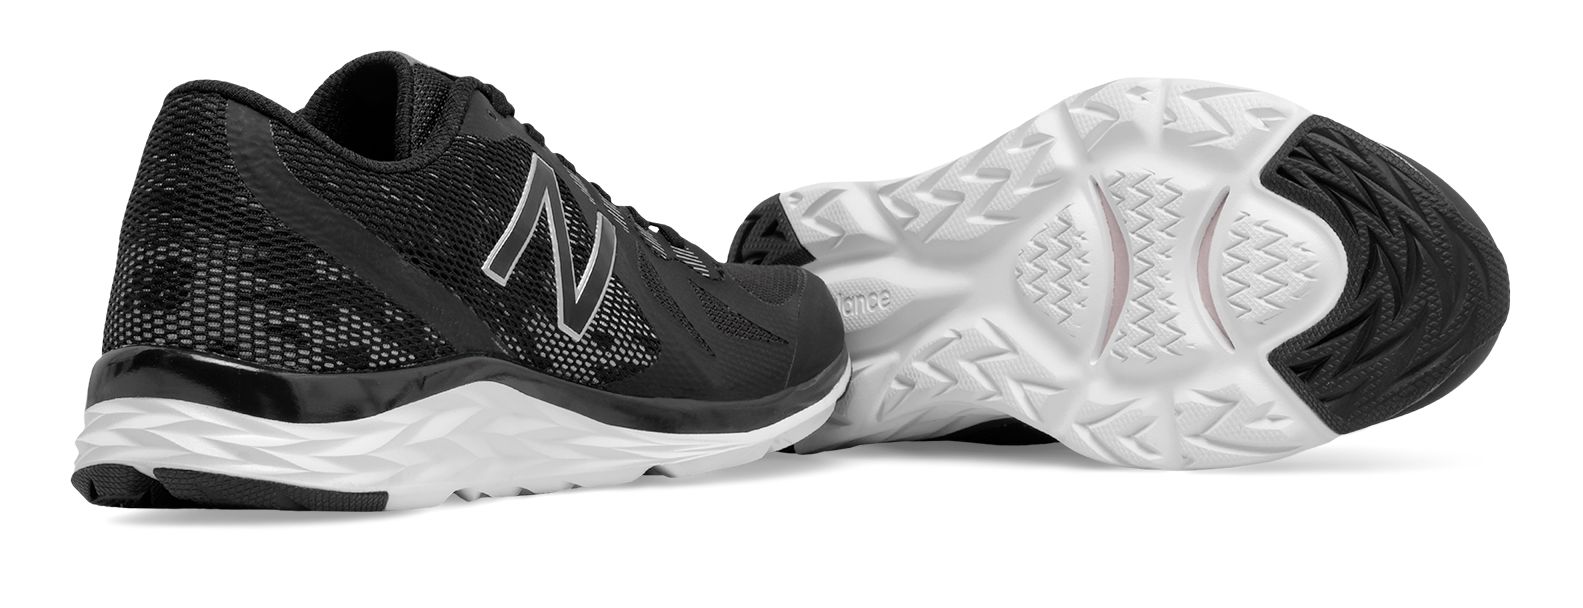 new balance 790v6 men's running shoes